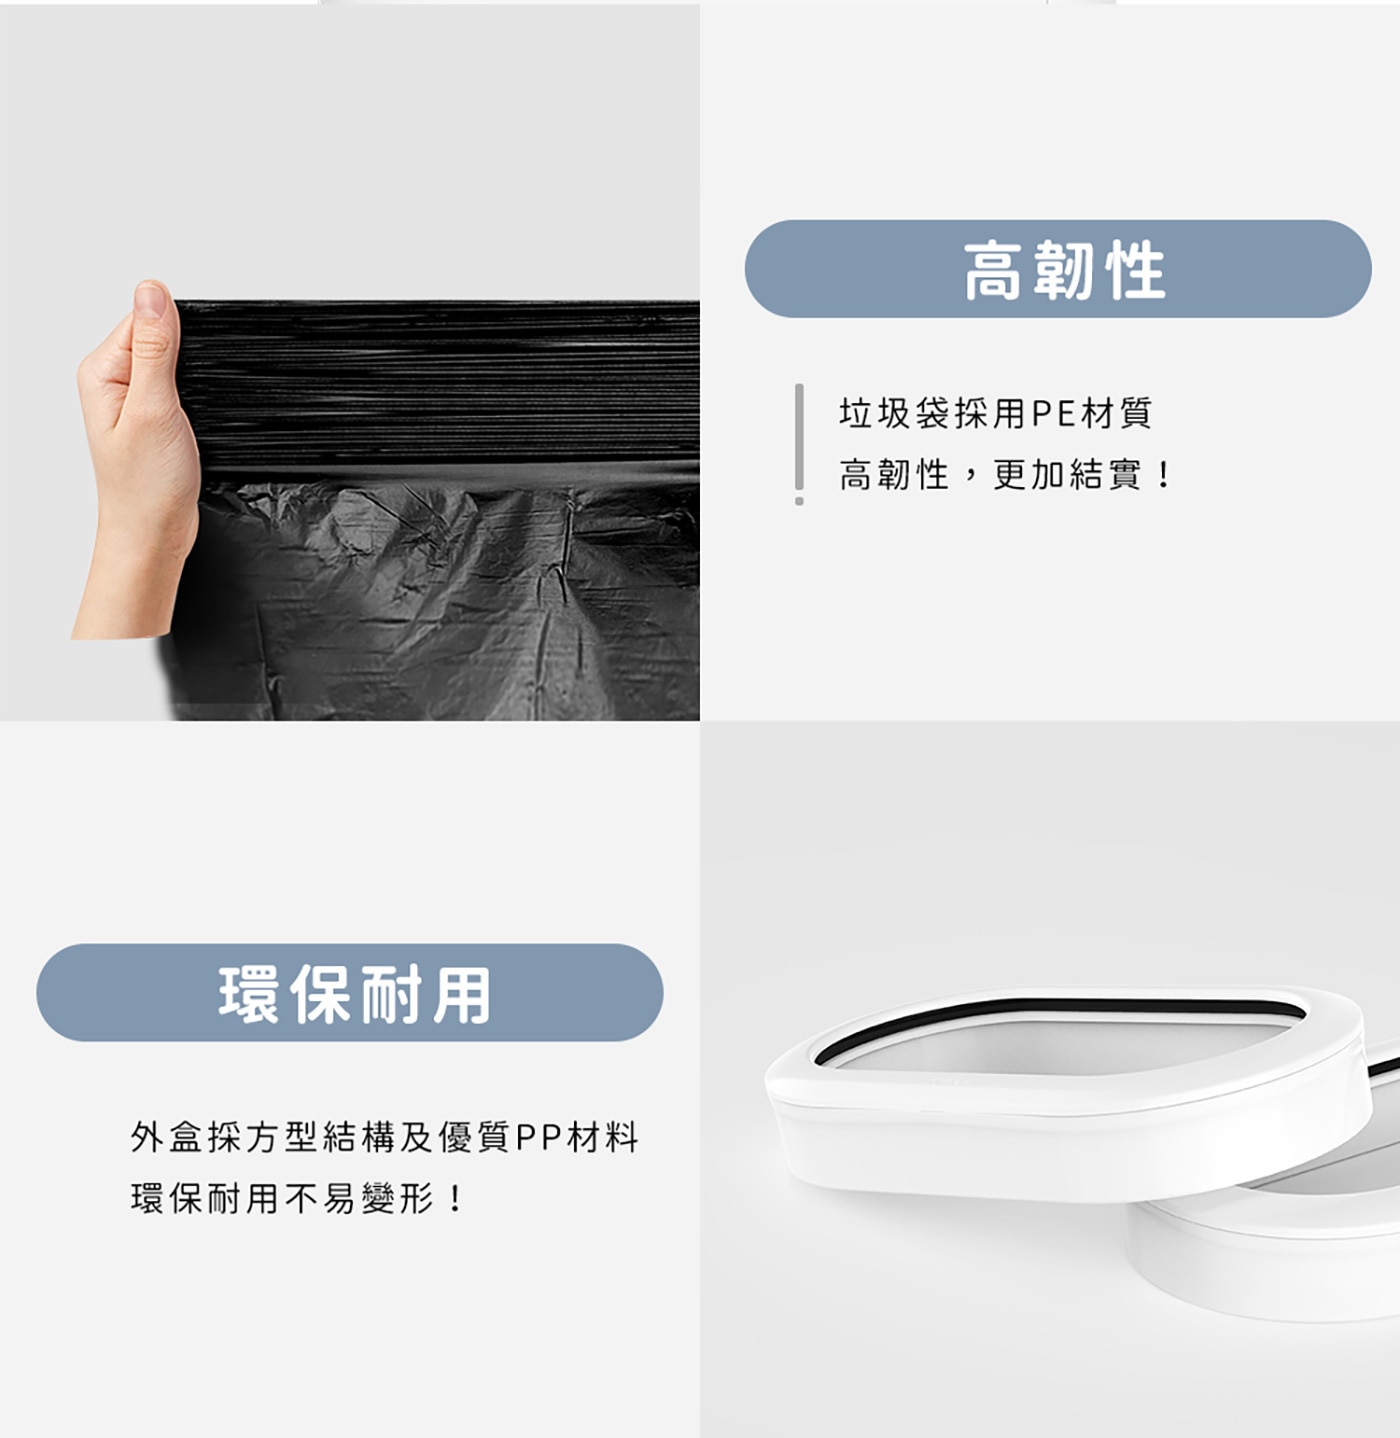 拓牛 R03F 台灣版白色半透明垃圾袋 6入 (T3 專用) 一鍵自動打包，熱塑封口技術，完整密封，無斷點設計。